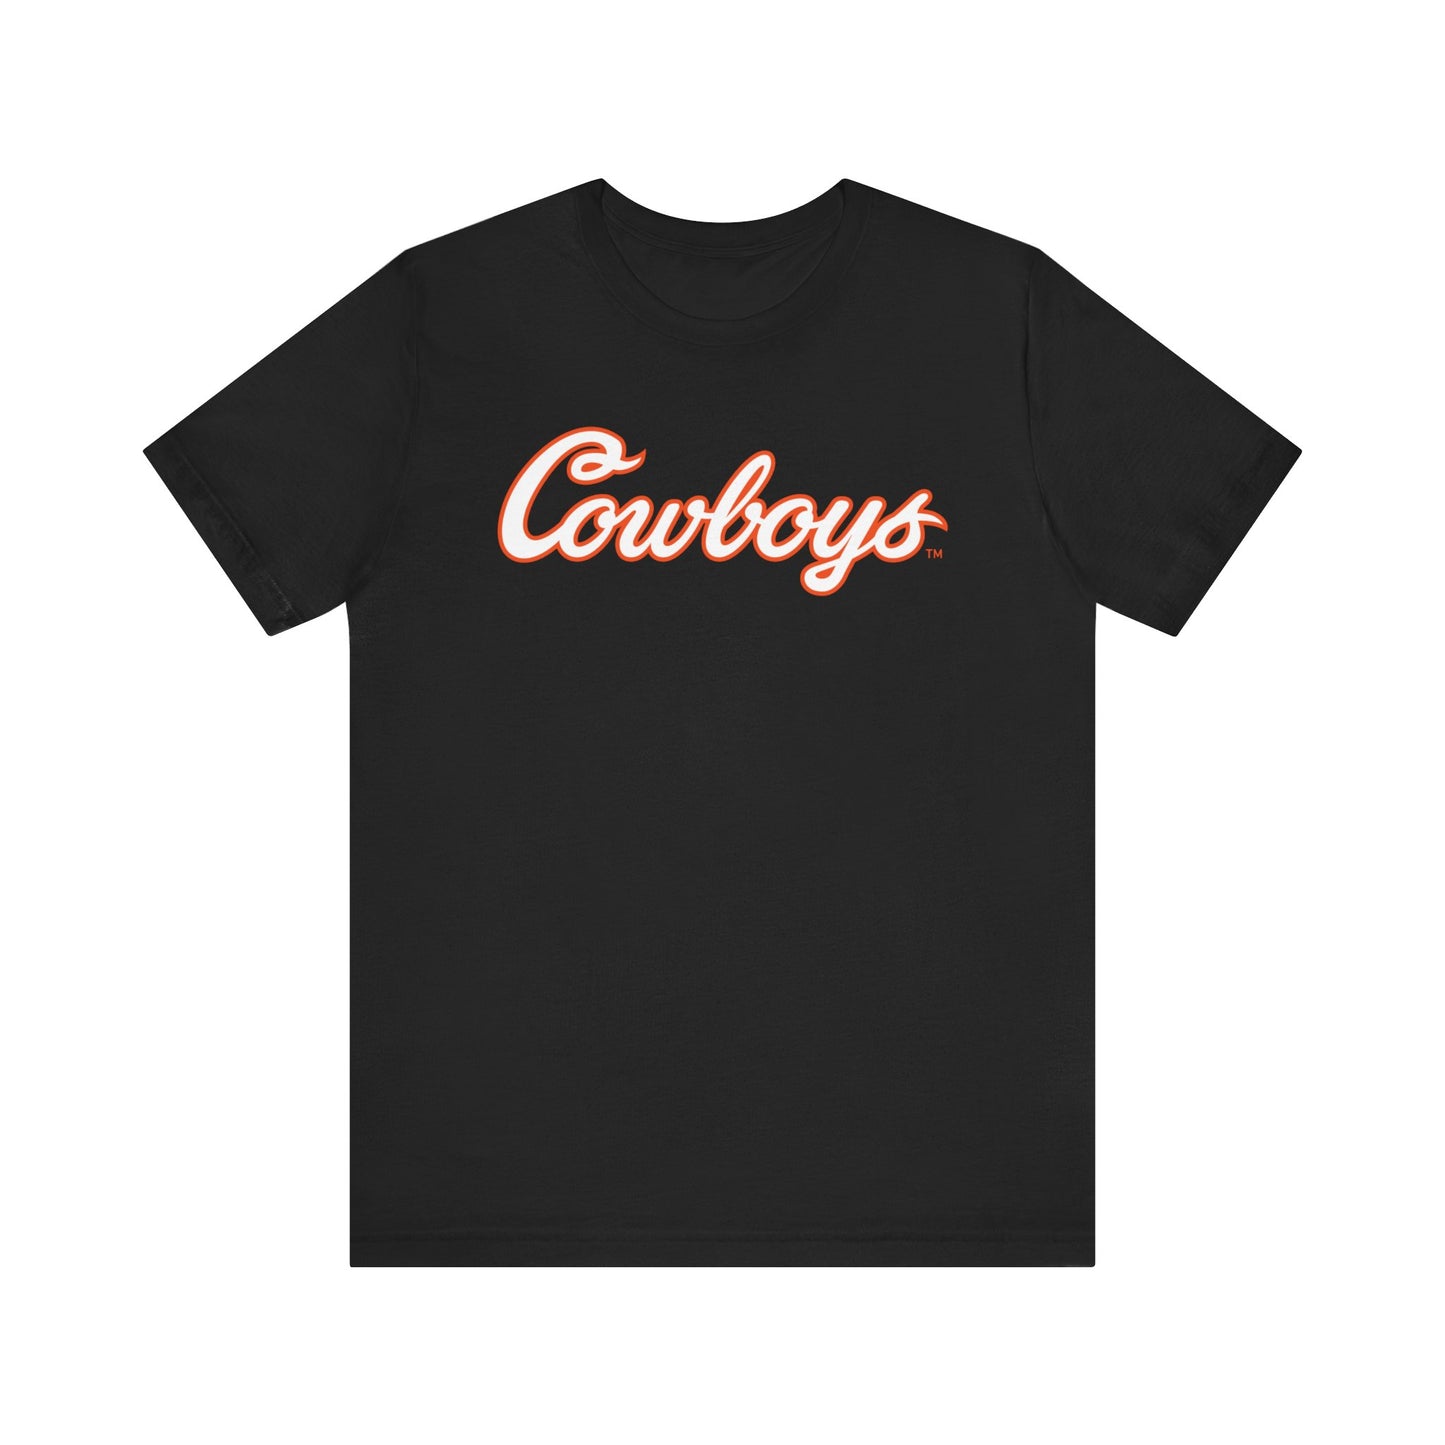 RJ Lester #13 Cursive Cowboys T-Shirt